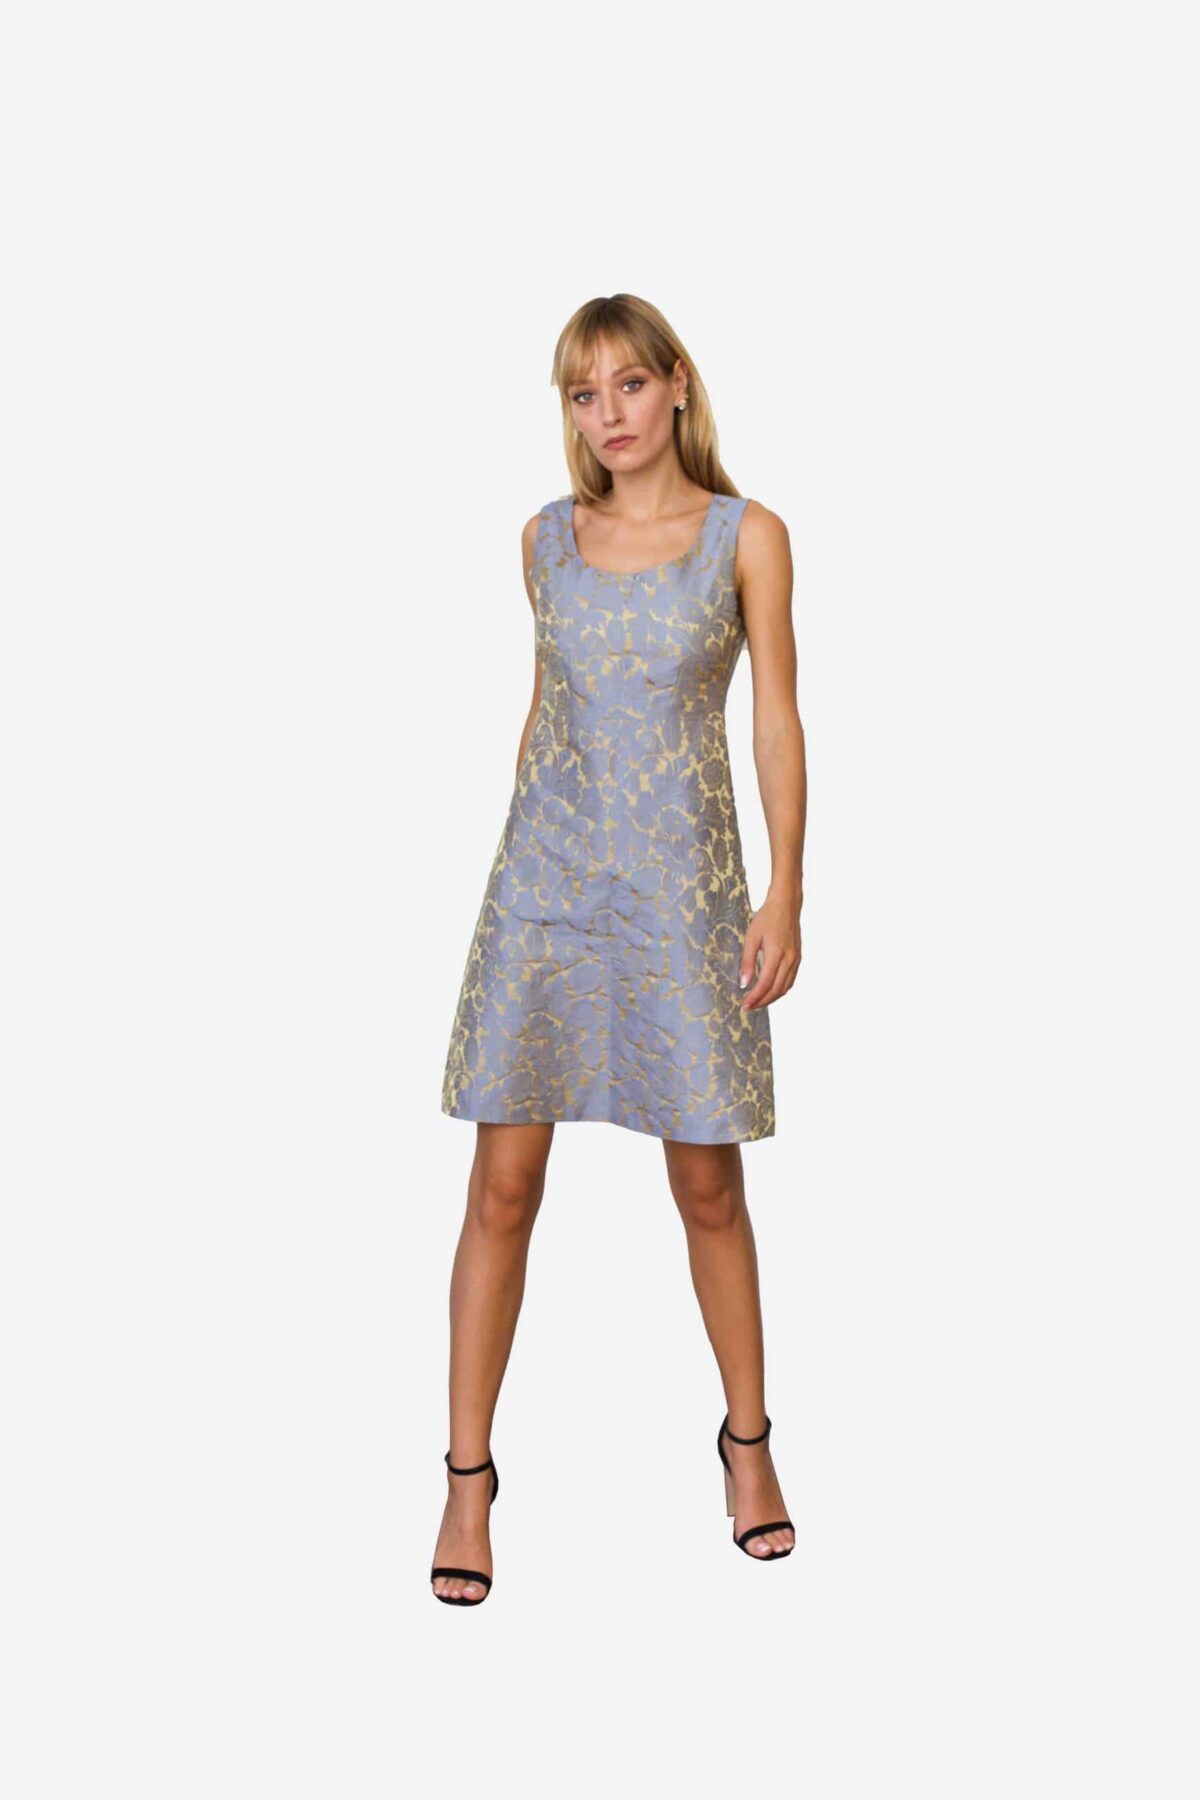 Kleid Madeleine von SANOGE. Exklusives Etuikleid aus blau goldenem Jacquard. Stoff aus Italien. Kleid hergestellt in Deutschland.